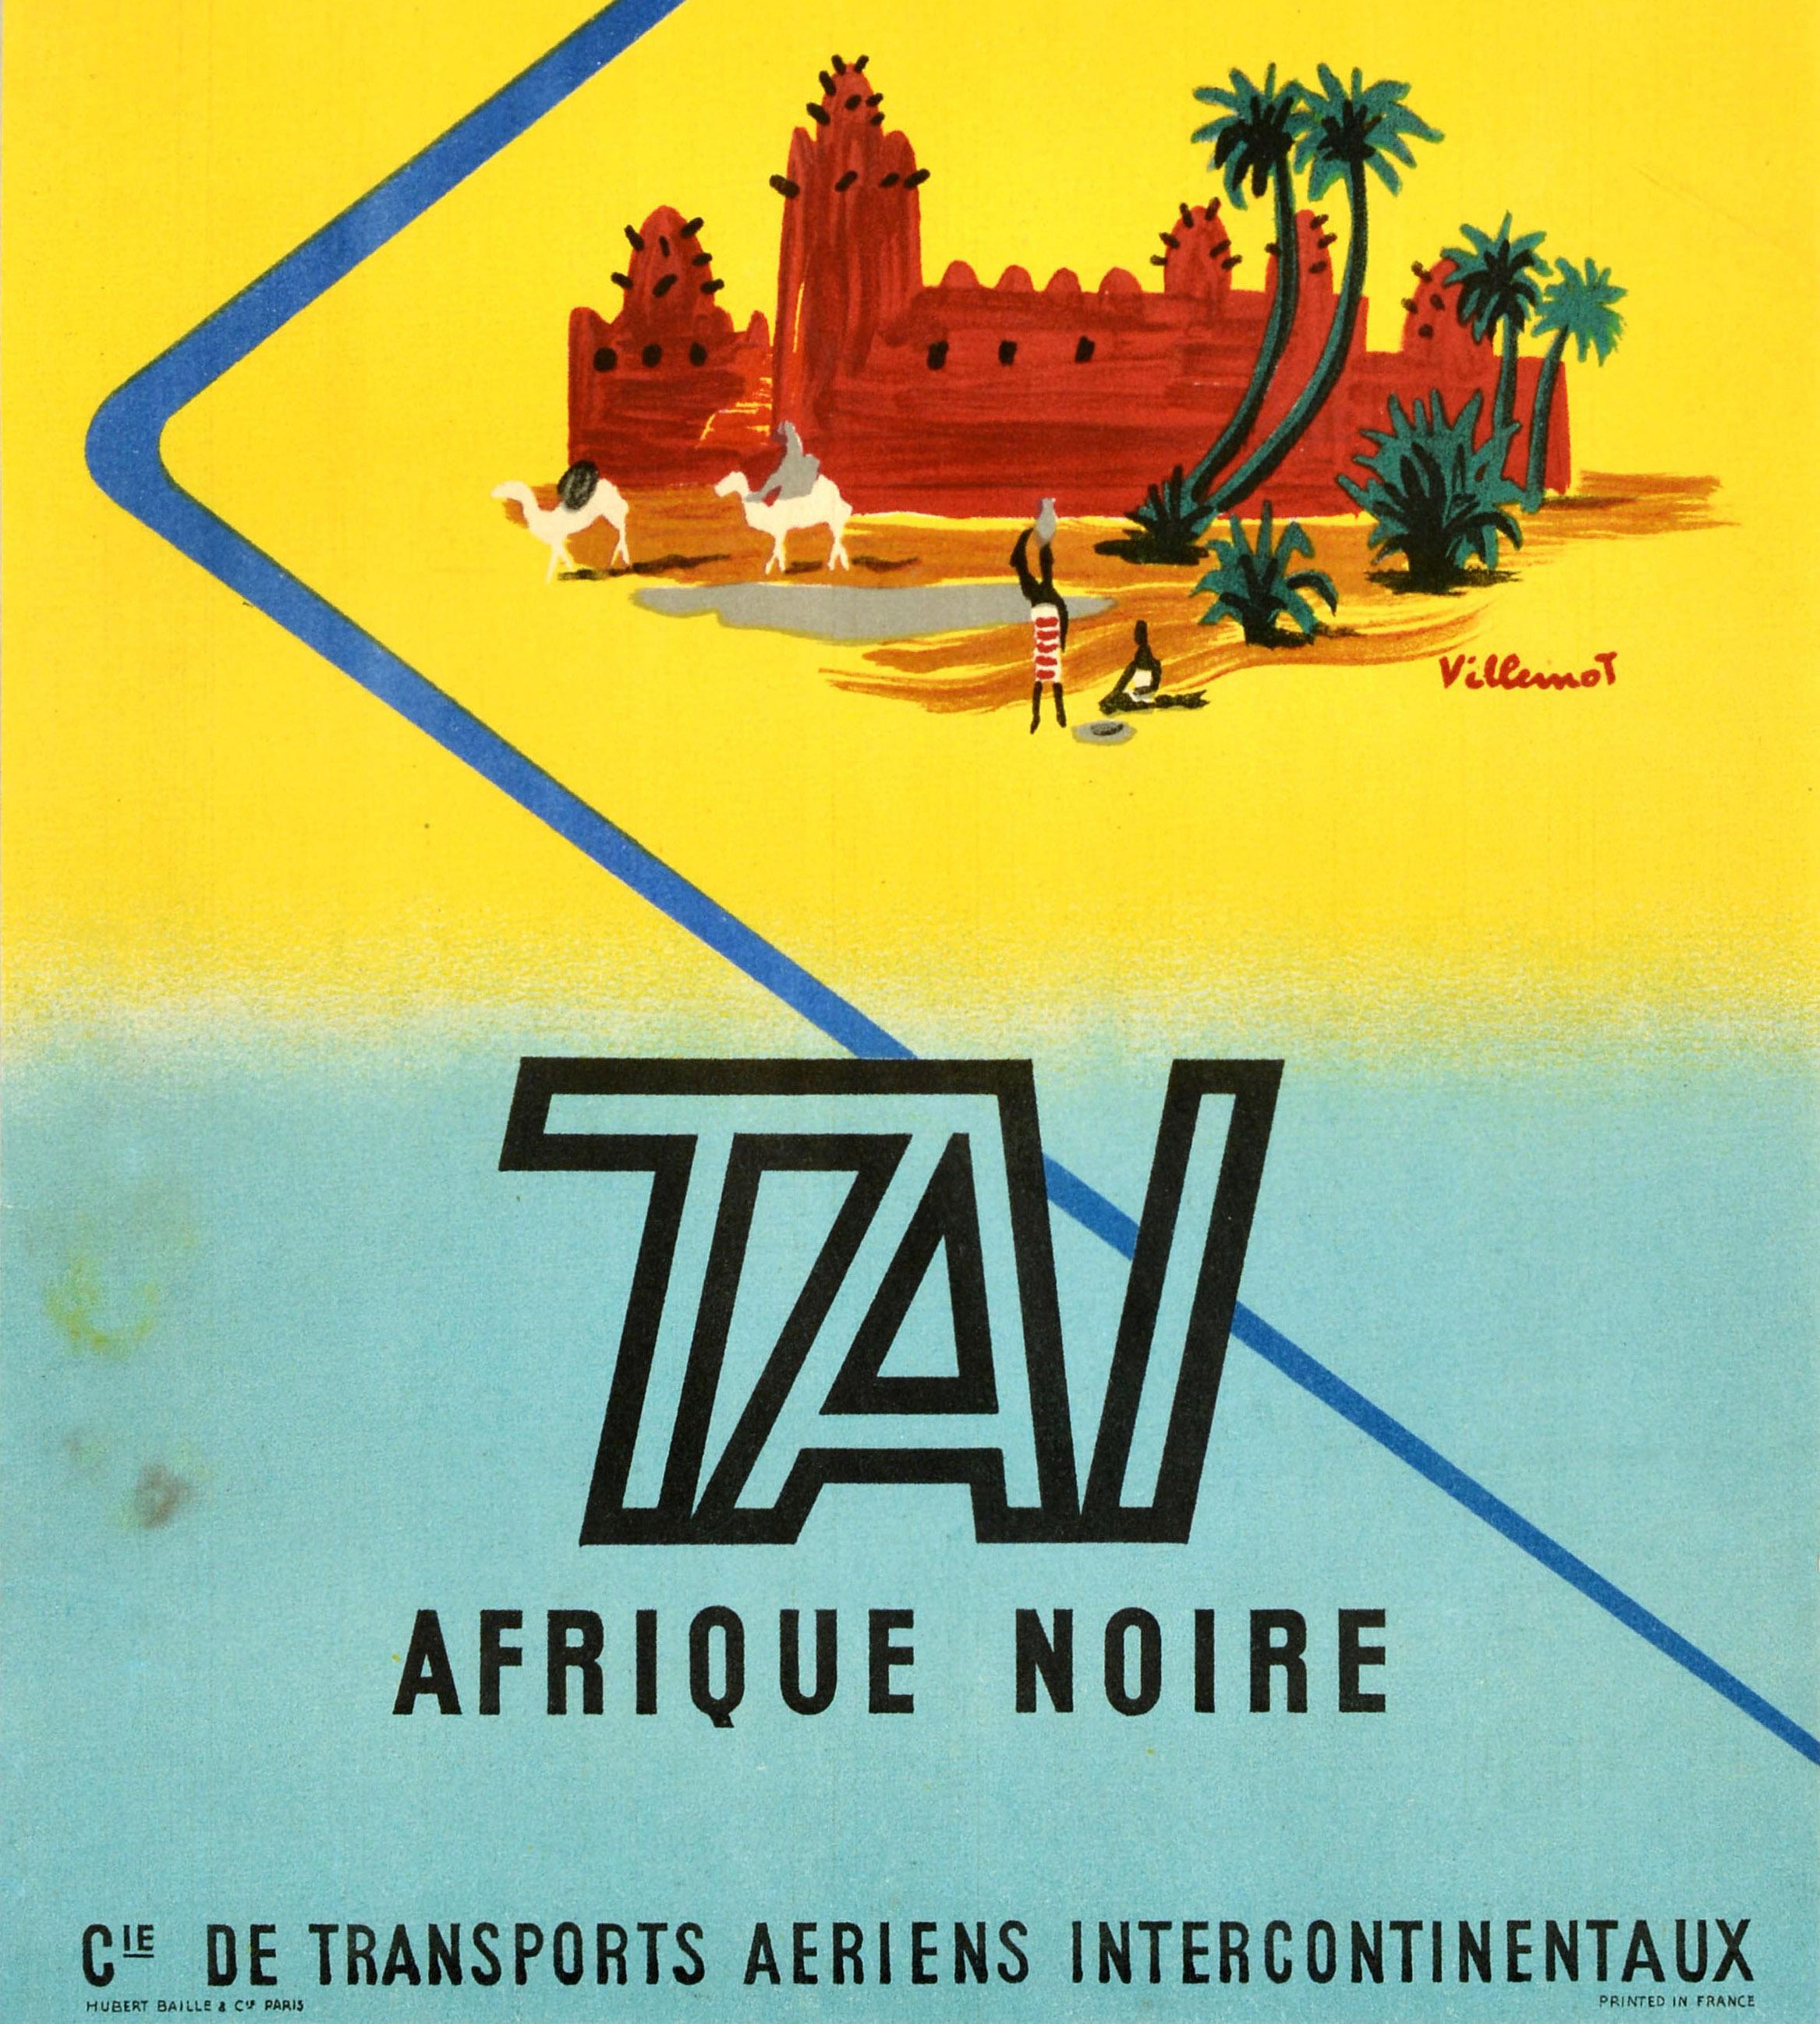 Original Vintage Travel Poster TAI Afrique Noire Sub Sahara Africa Villemot Art For Sale 1